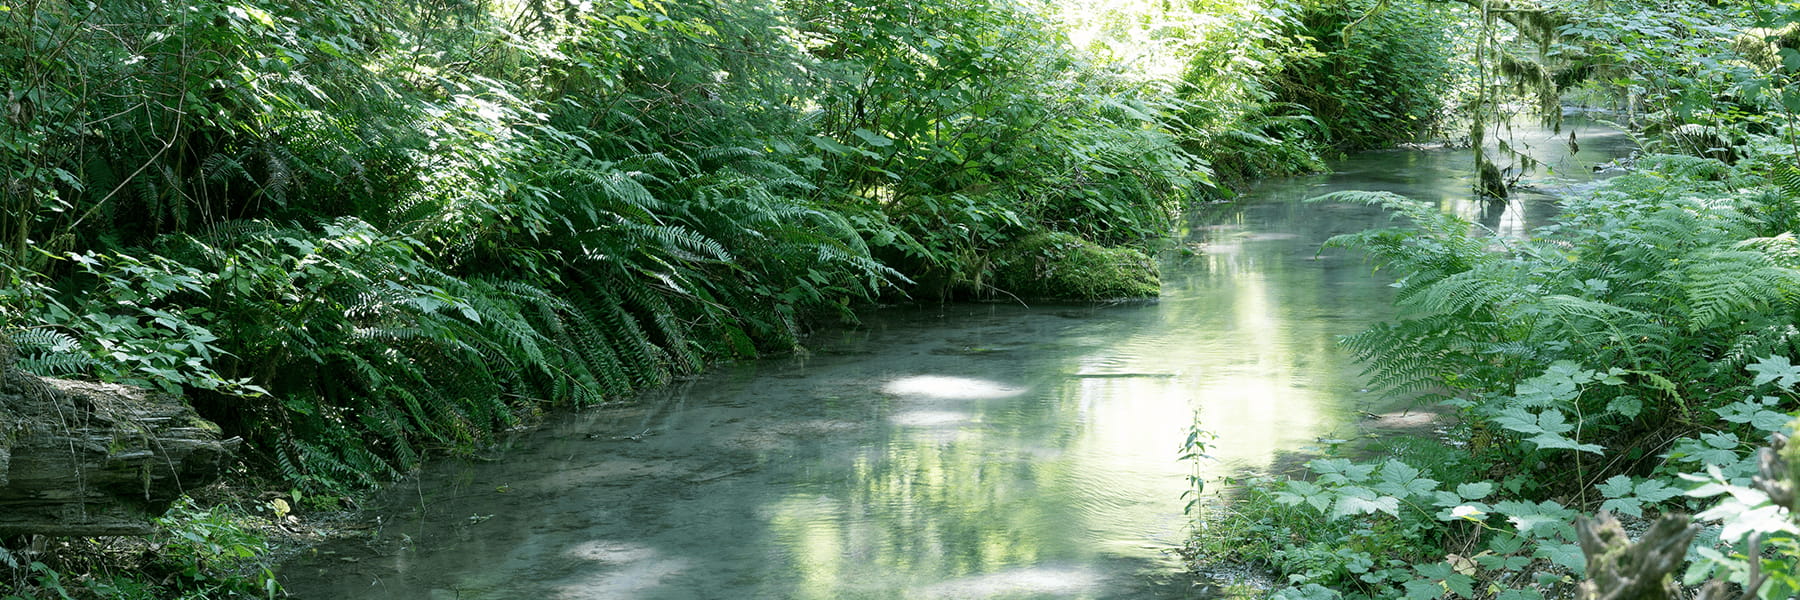 River running through a green forest